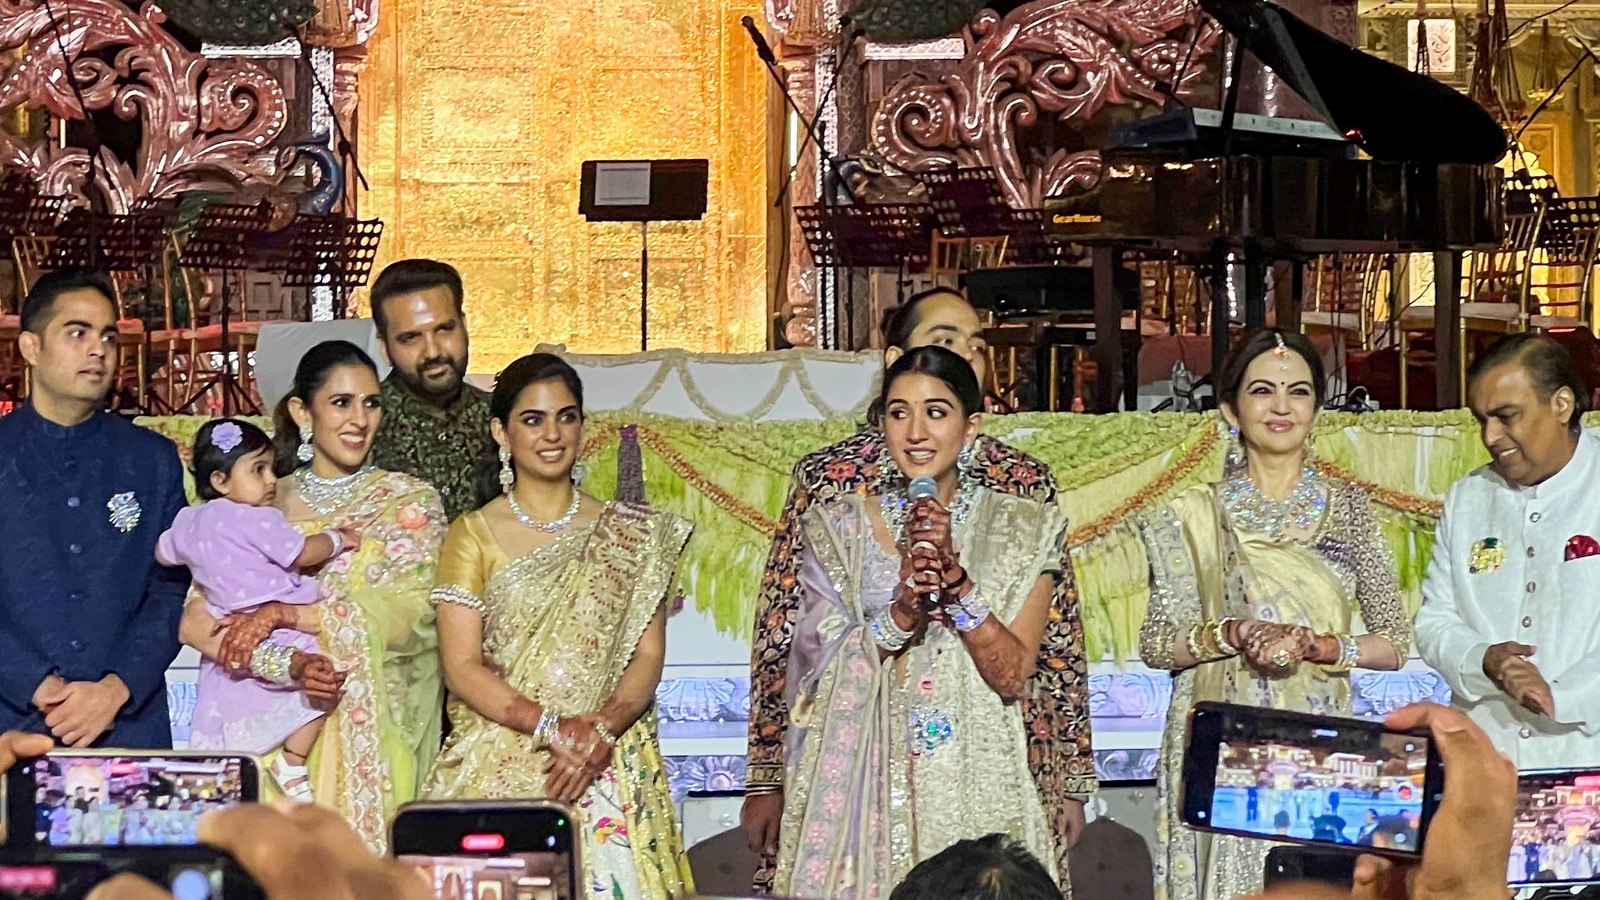 पाकिस्तानी अभिनेता द्वारा लंदन में अंबानी परिवार के अधिक विवाह समारोहों का मजाक उड़ाने पर इंटरनेट की प्रतिक्रियाएं: 'वे खुश हैं, उन्हें रहने दीजिए'